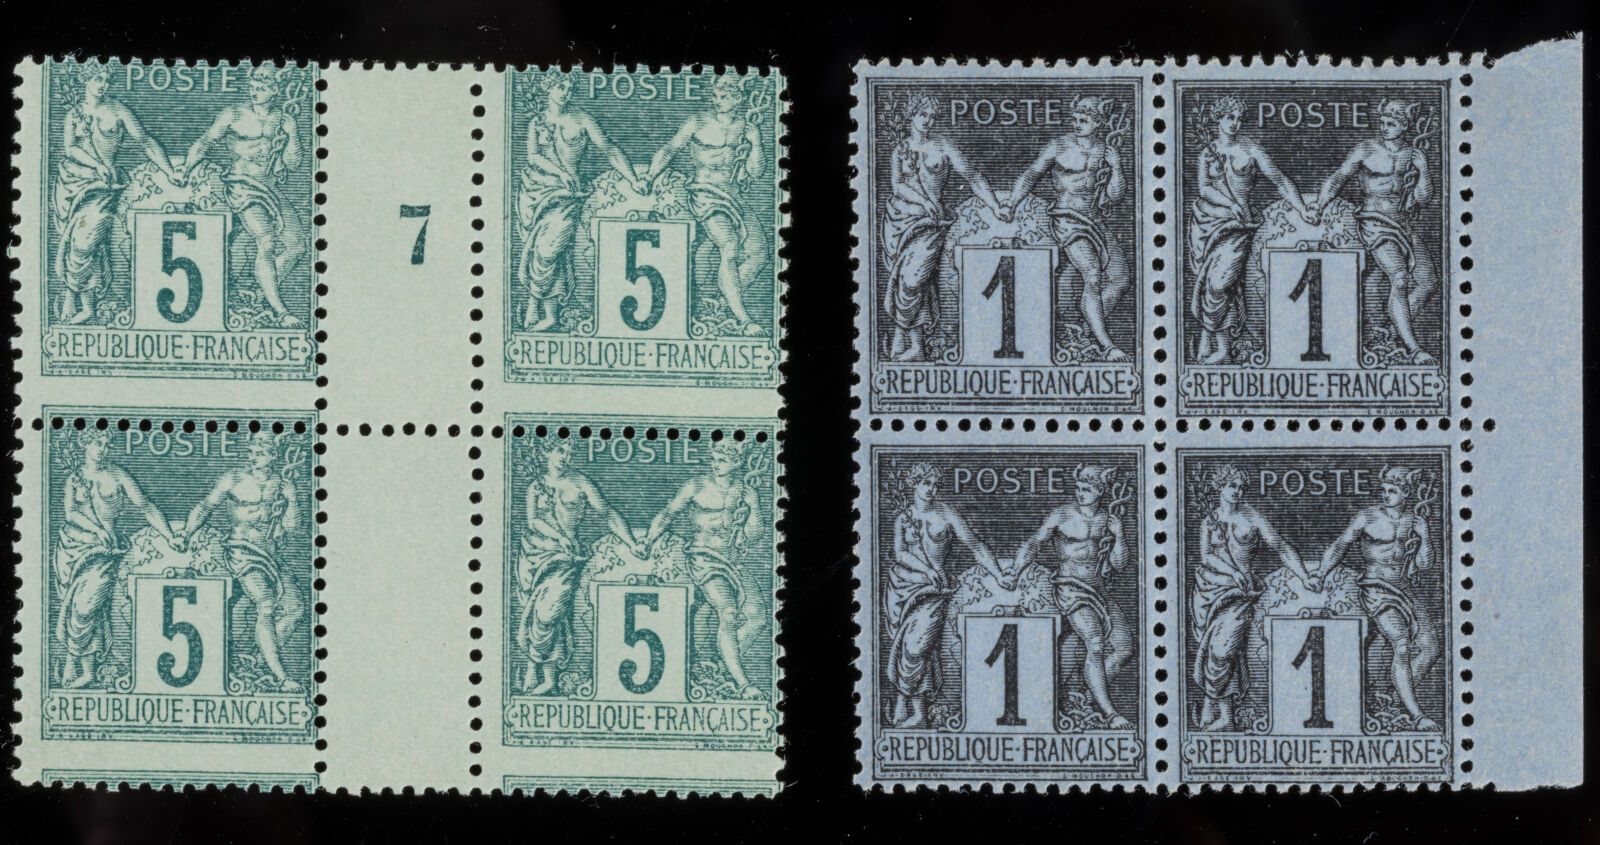 Null Francobollo N°75 Tipo II - Blocco di 4 francobolli: 5c verde con trapuntatu&hellip;